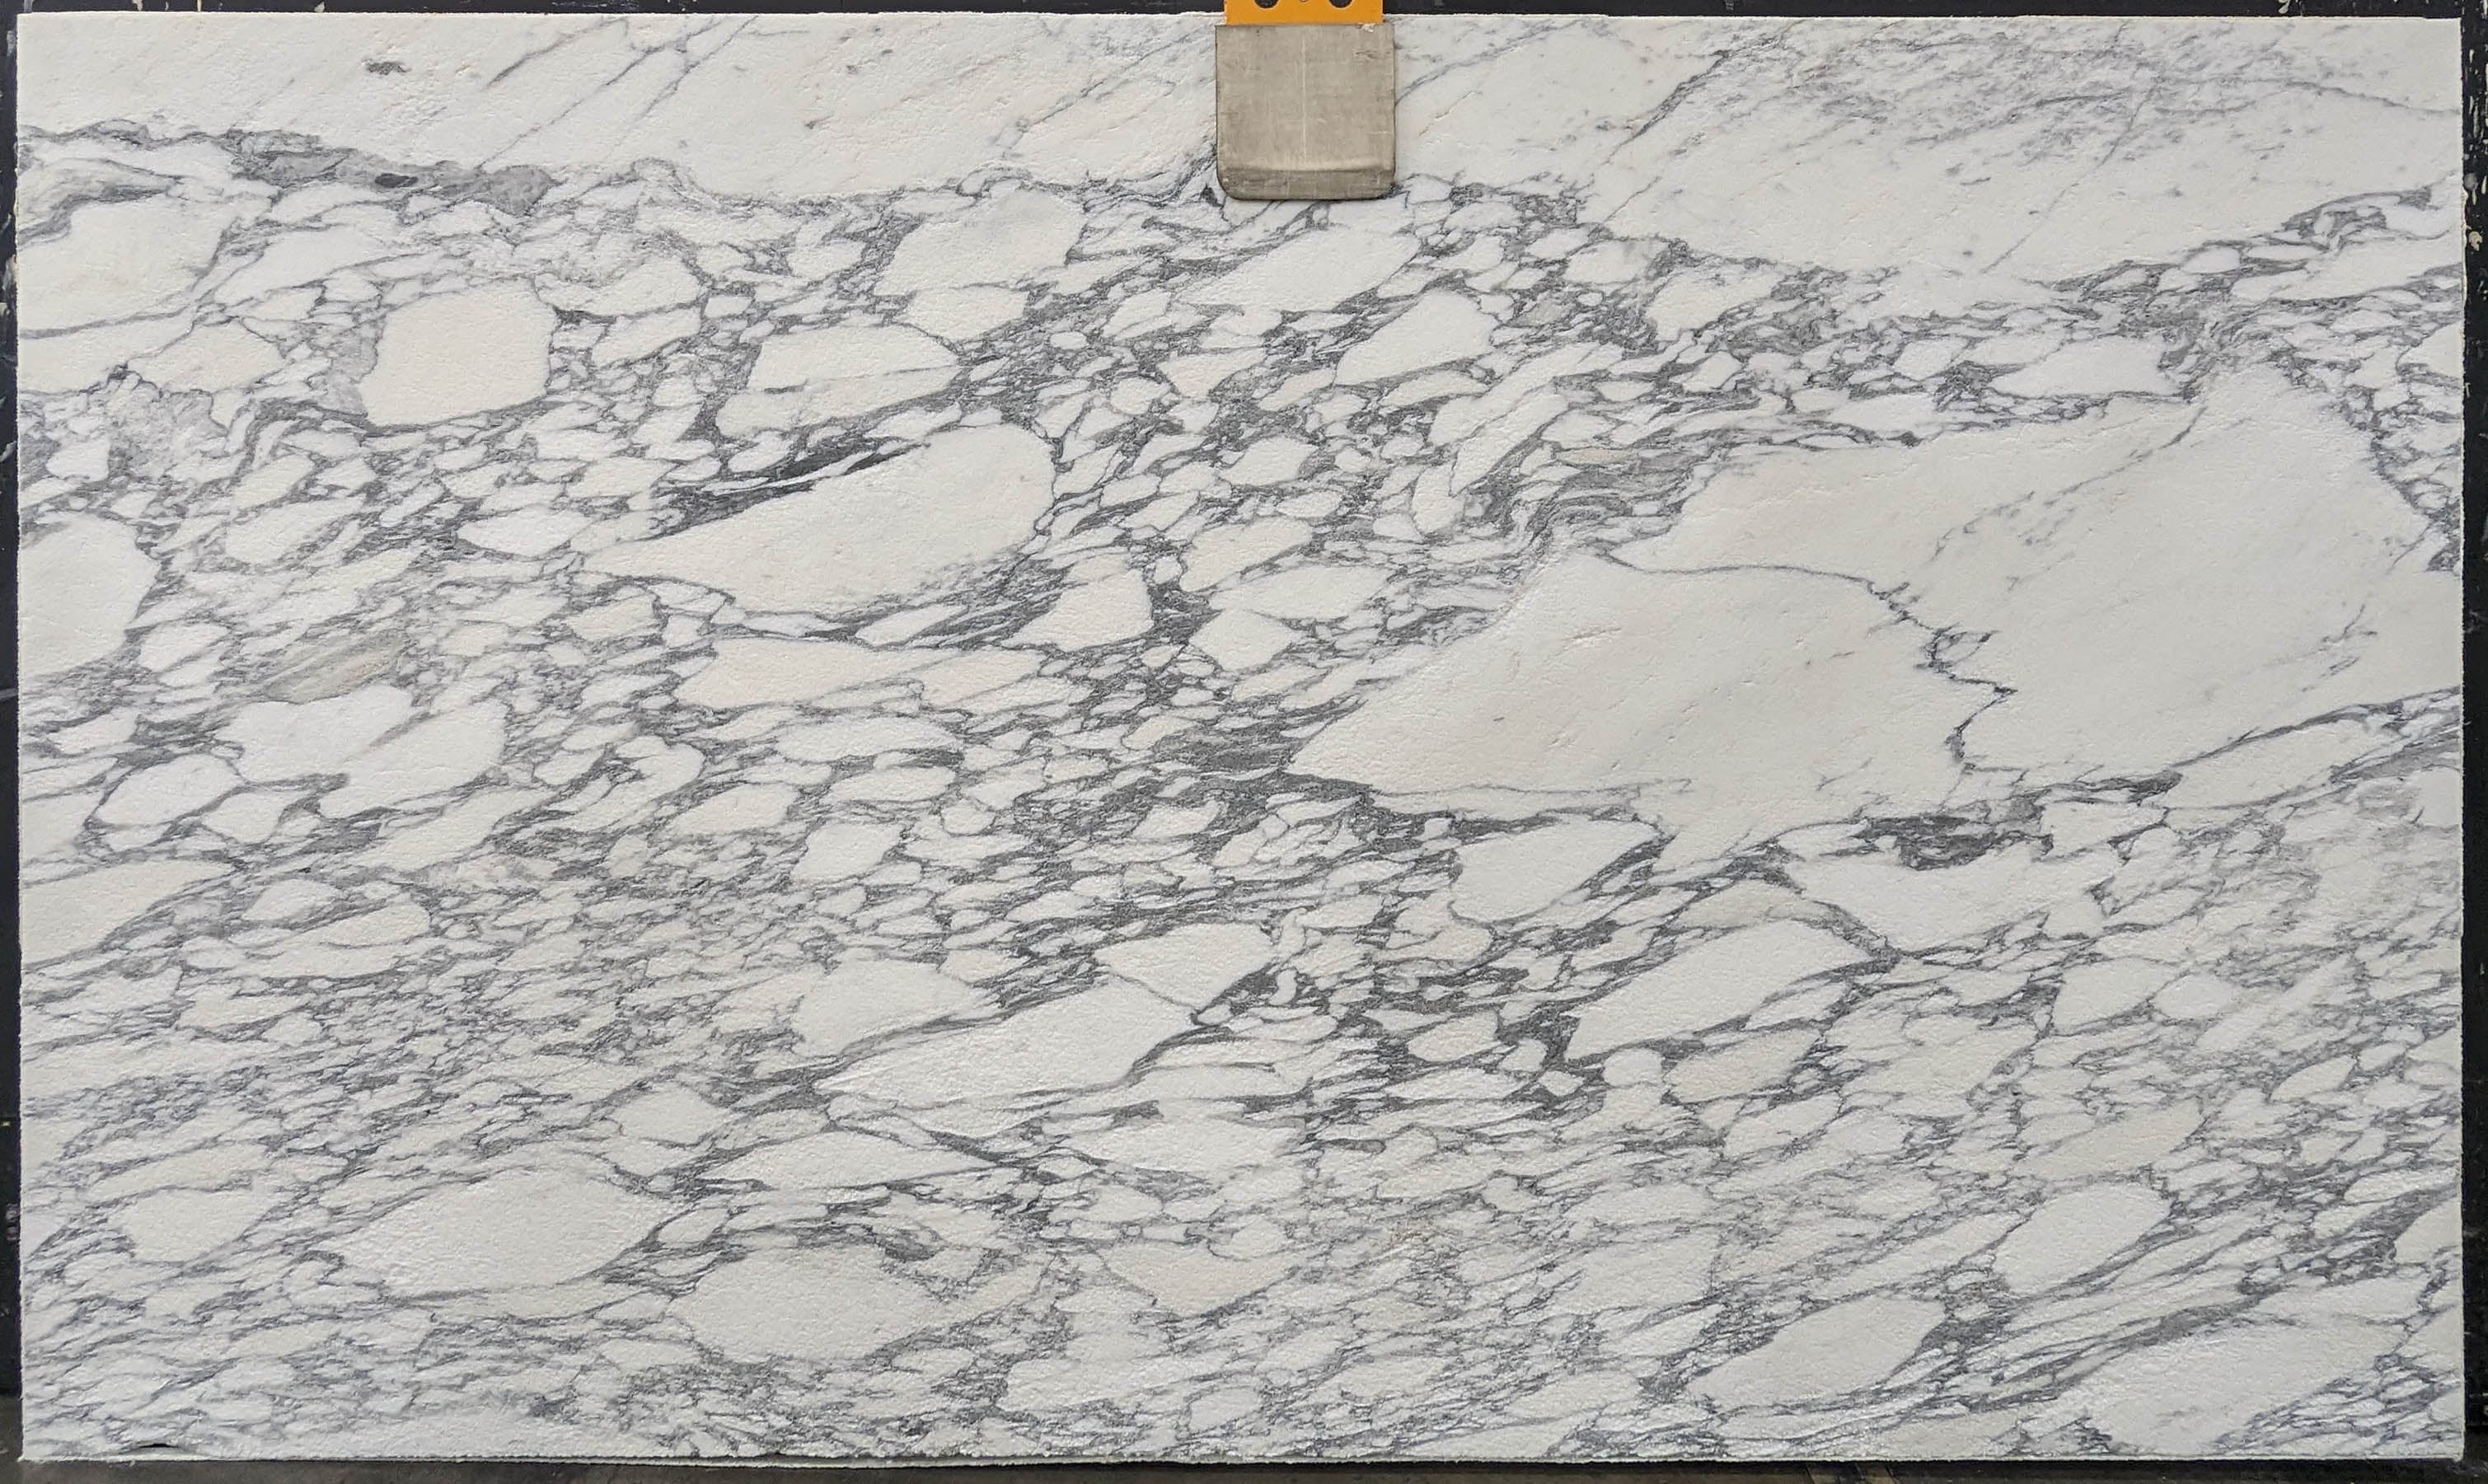  Arabescato Corchia Marble Slab 3/4 - 178515#63 -  66X115 